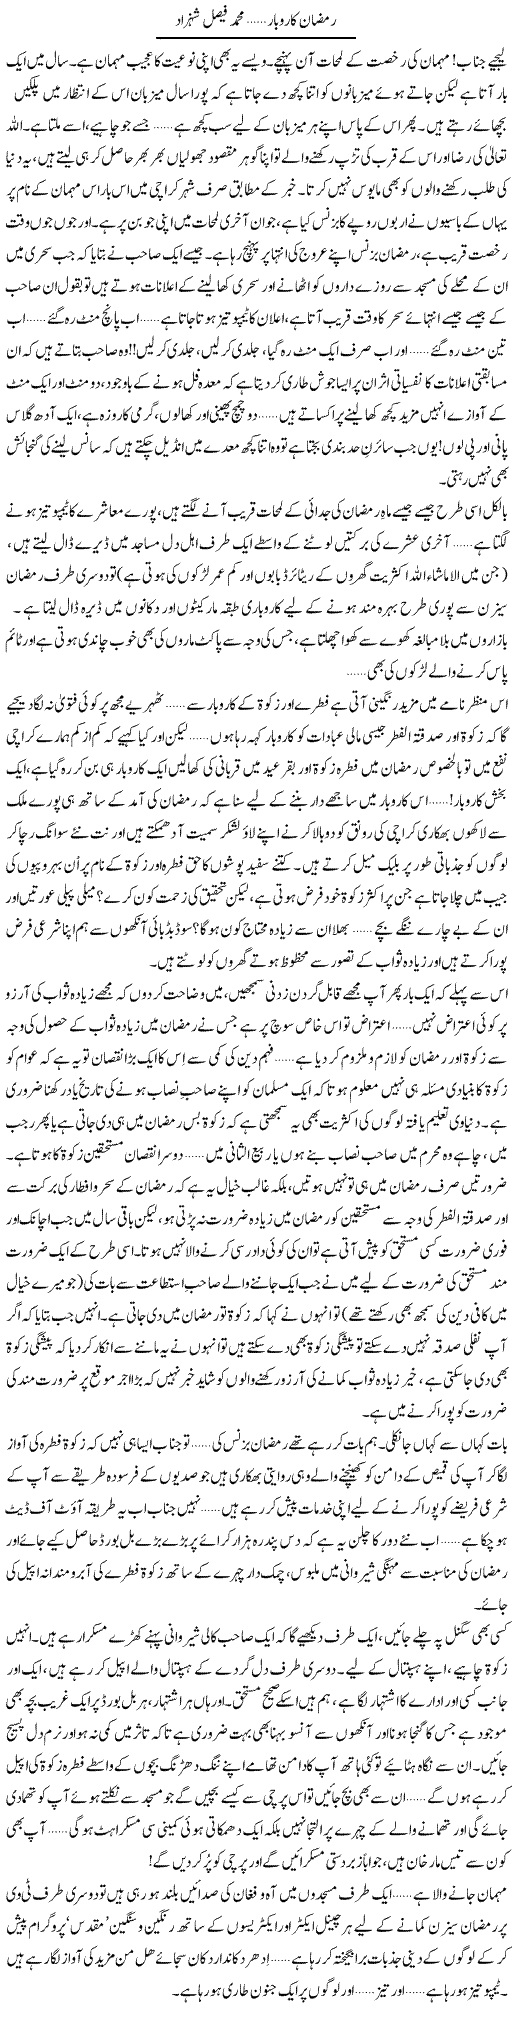 Ramzan Karobar | Muhammad Faisal Shehzad | Daily Urdu Columns